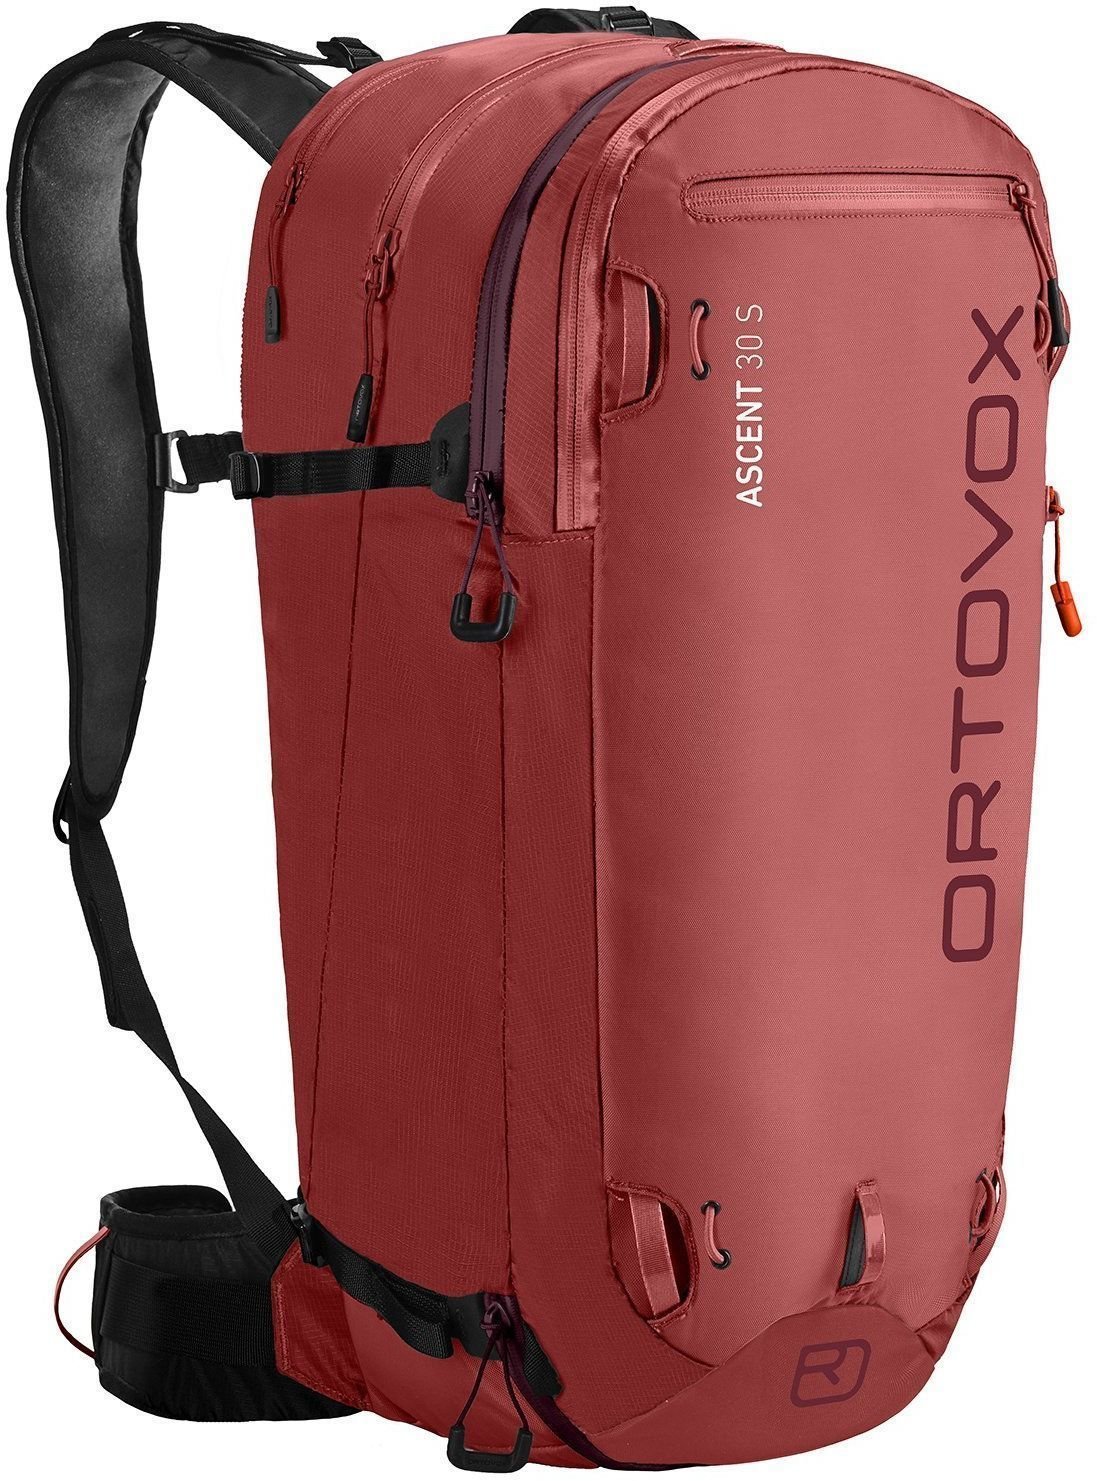 Ski Travel Bag Ortovox Ascent 30 S Blush Ski Travel Bag